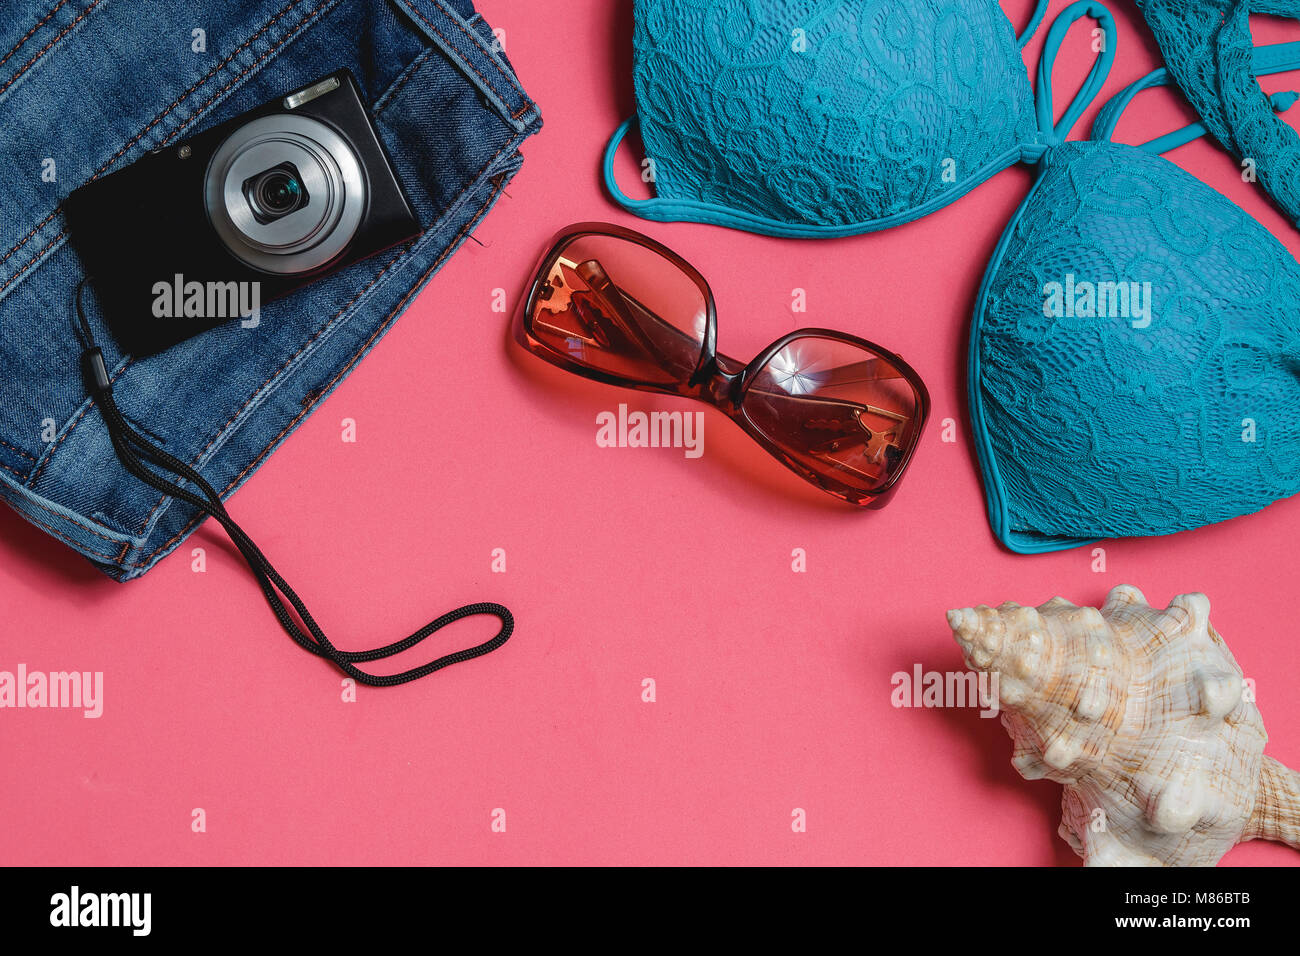 Maillot de bain, Jeans, lunettes de soleil, appareil photo, un coquillage sur fond rose. Vue de dessus Travel Concept avec Copyspace. Banque D'Images